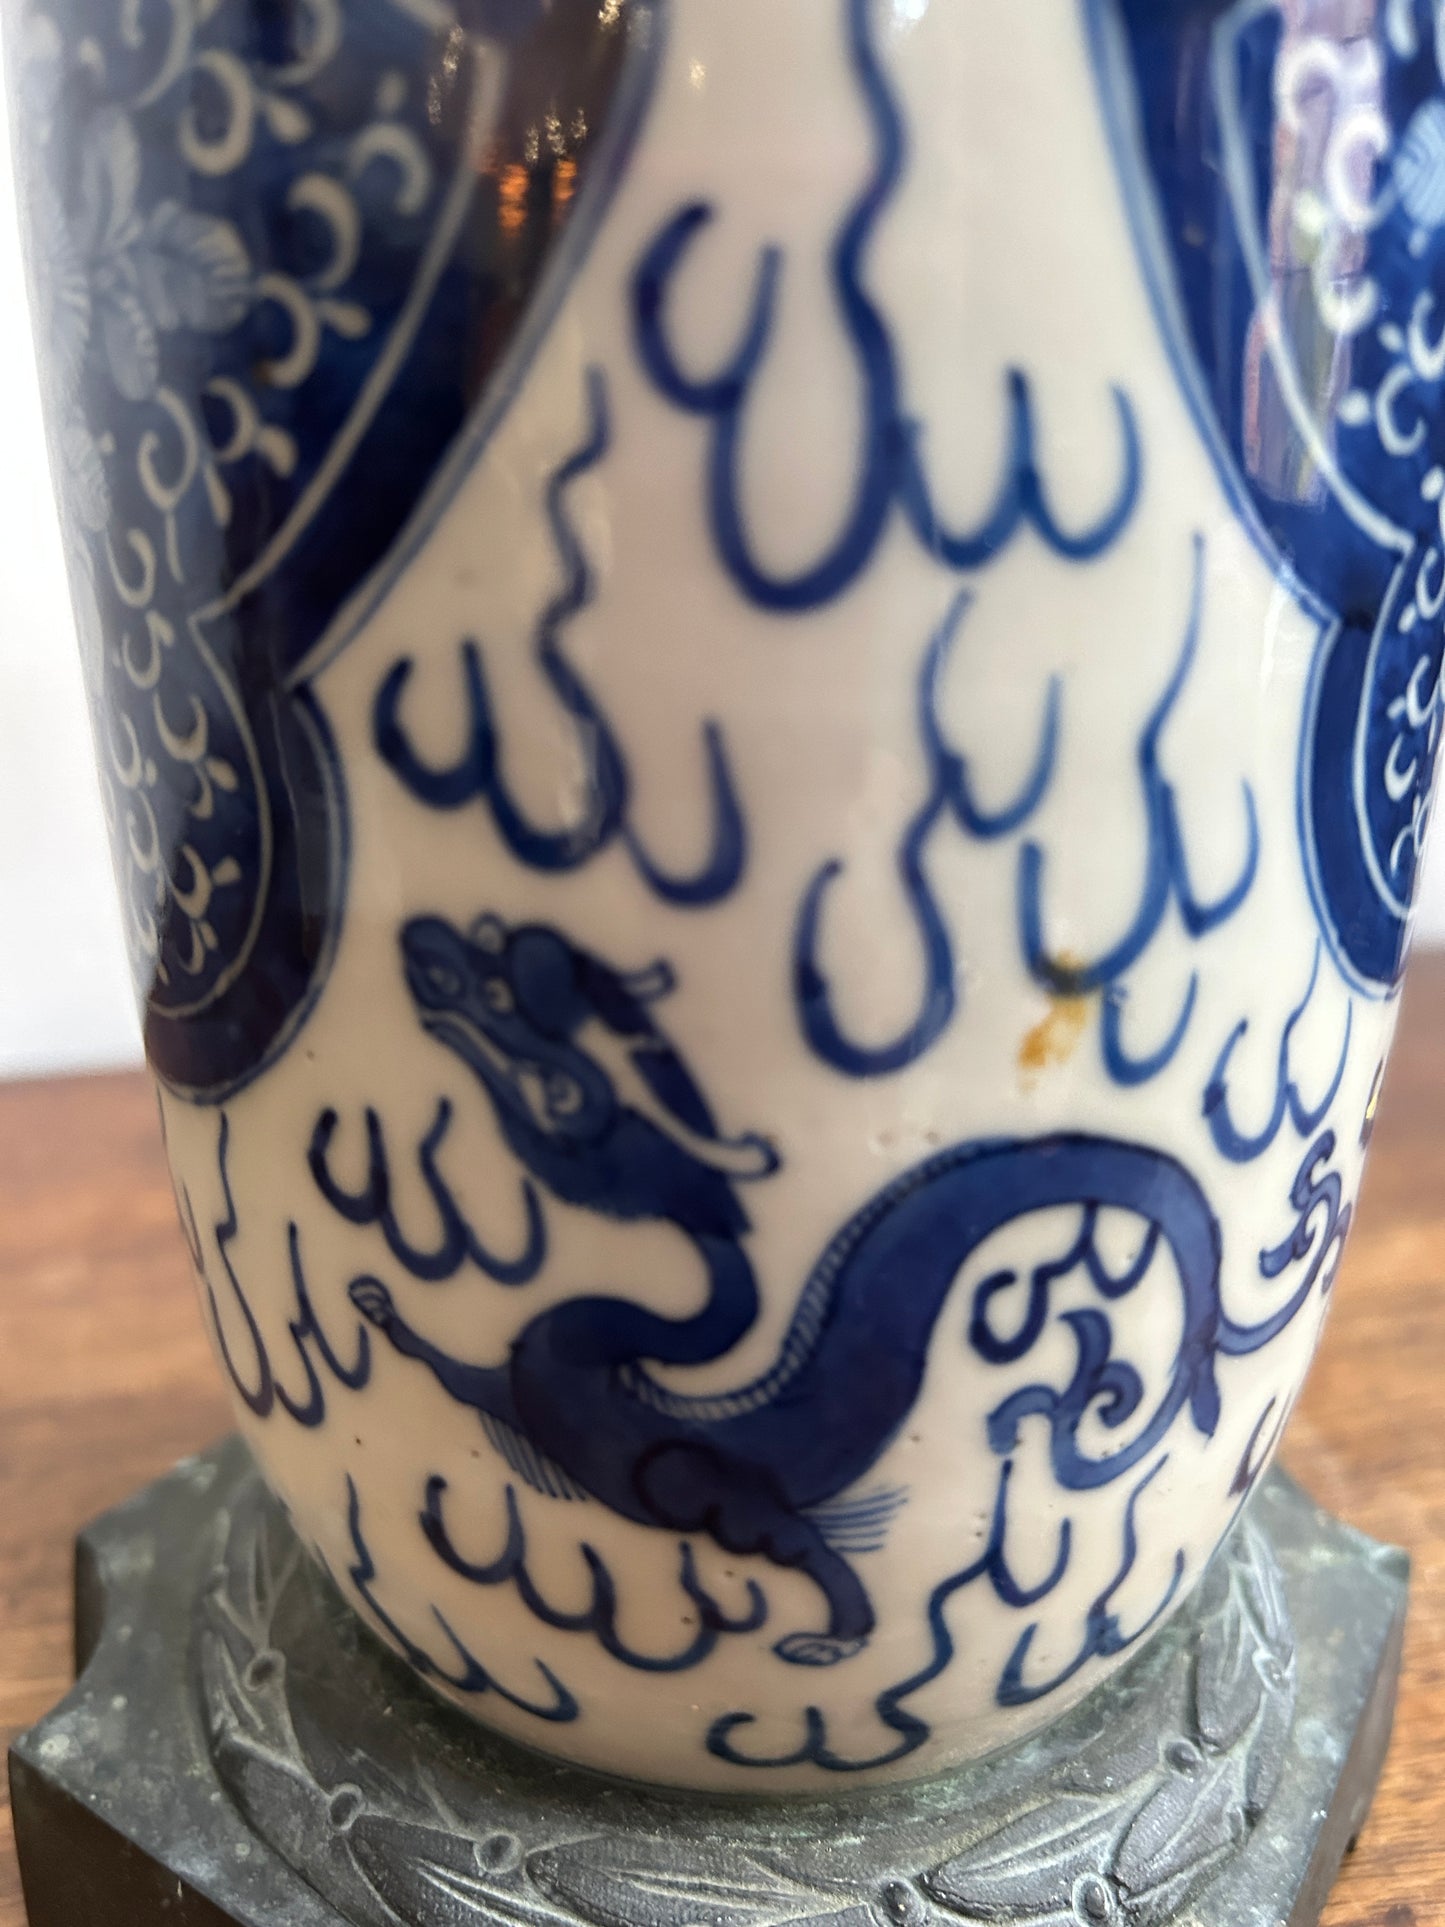 Lampada convertita in vaso di porcellana Kangxi